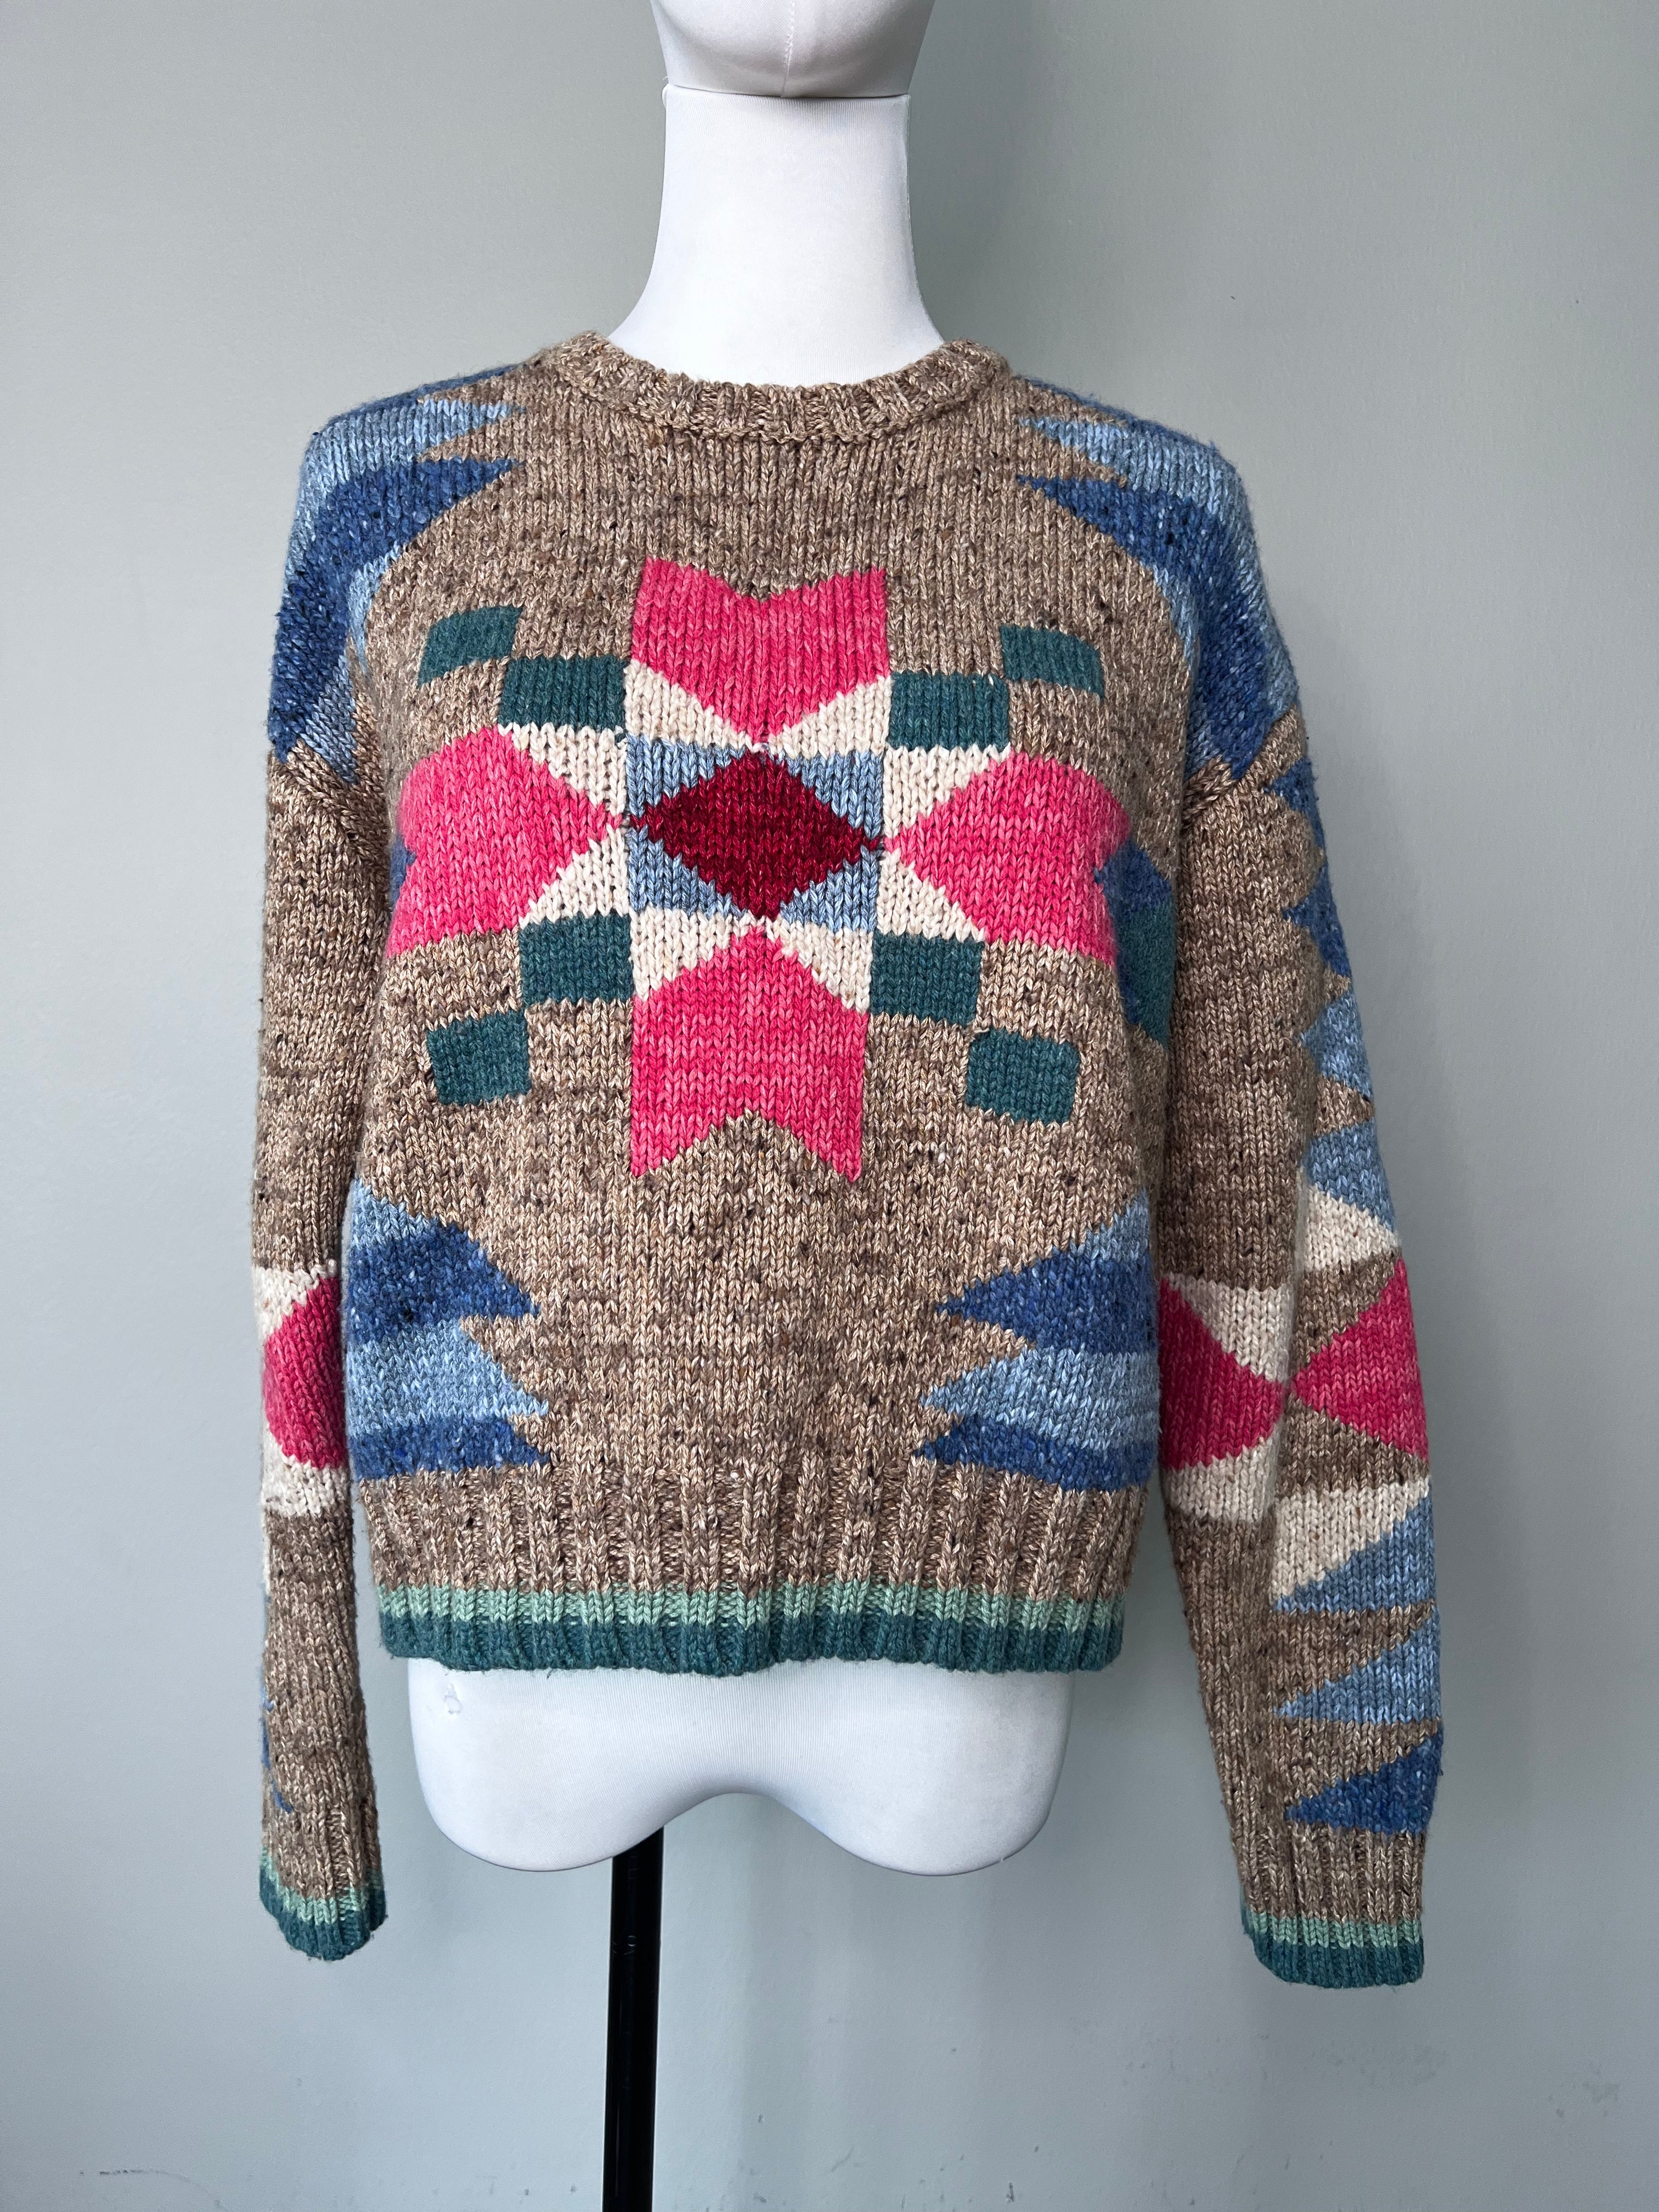 Ralph-Lauren sweater